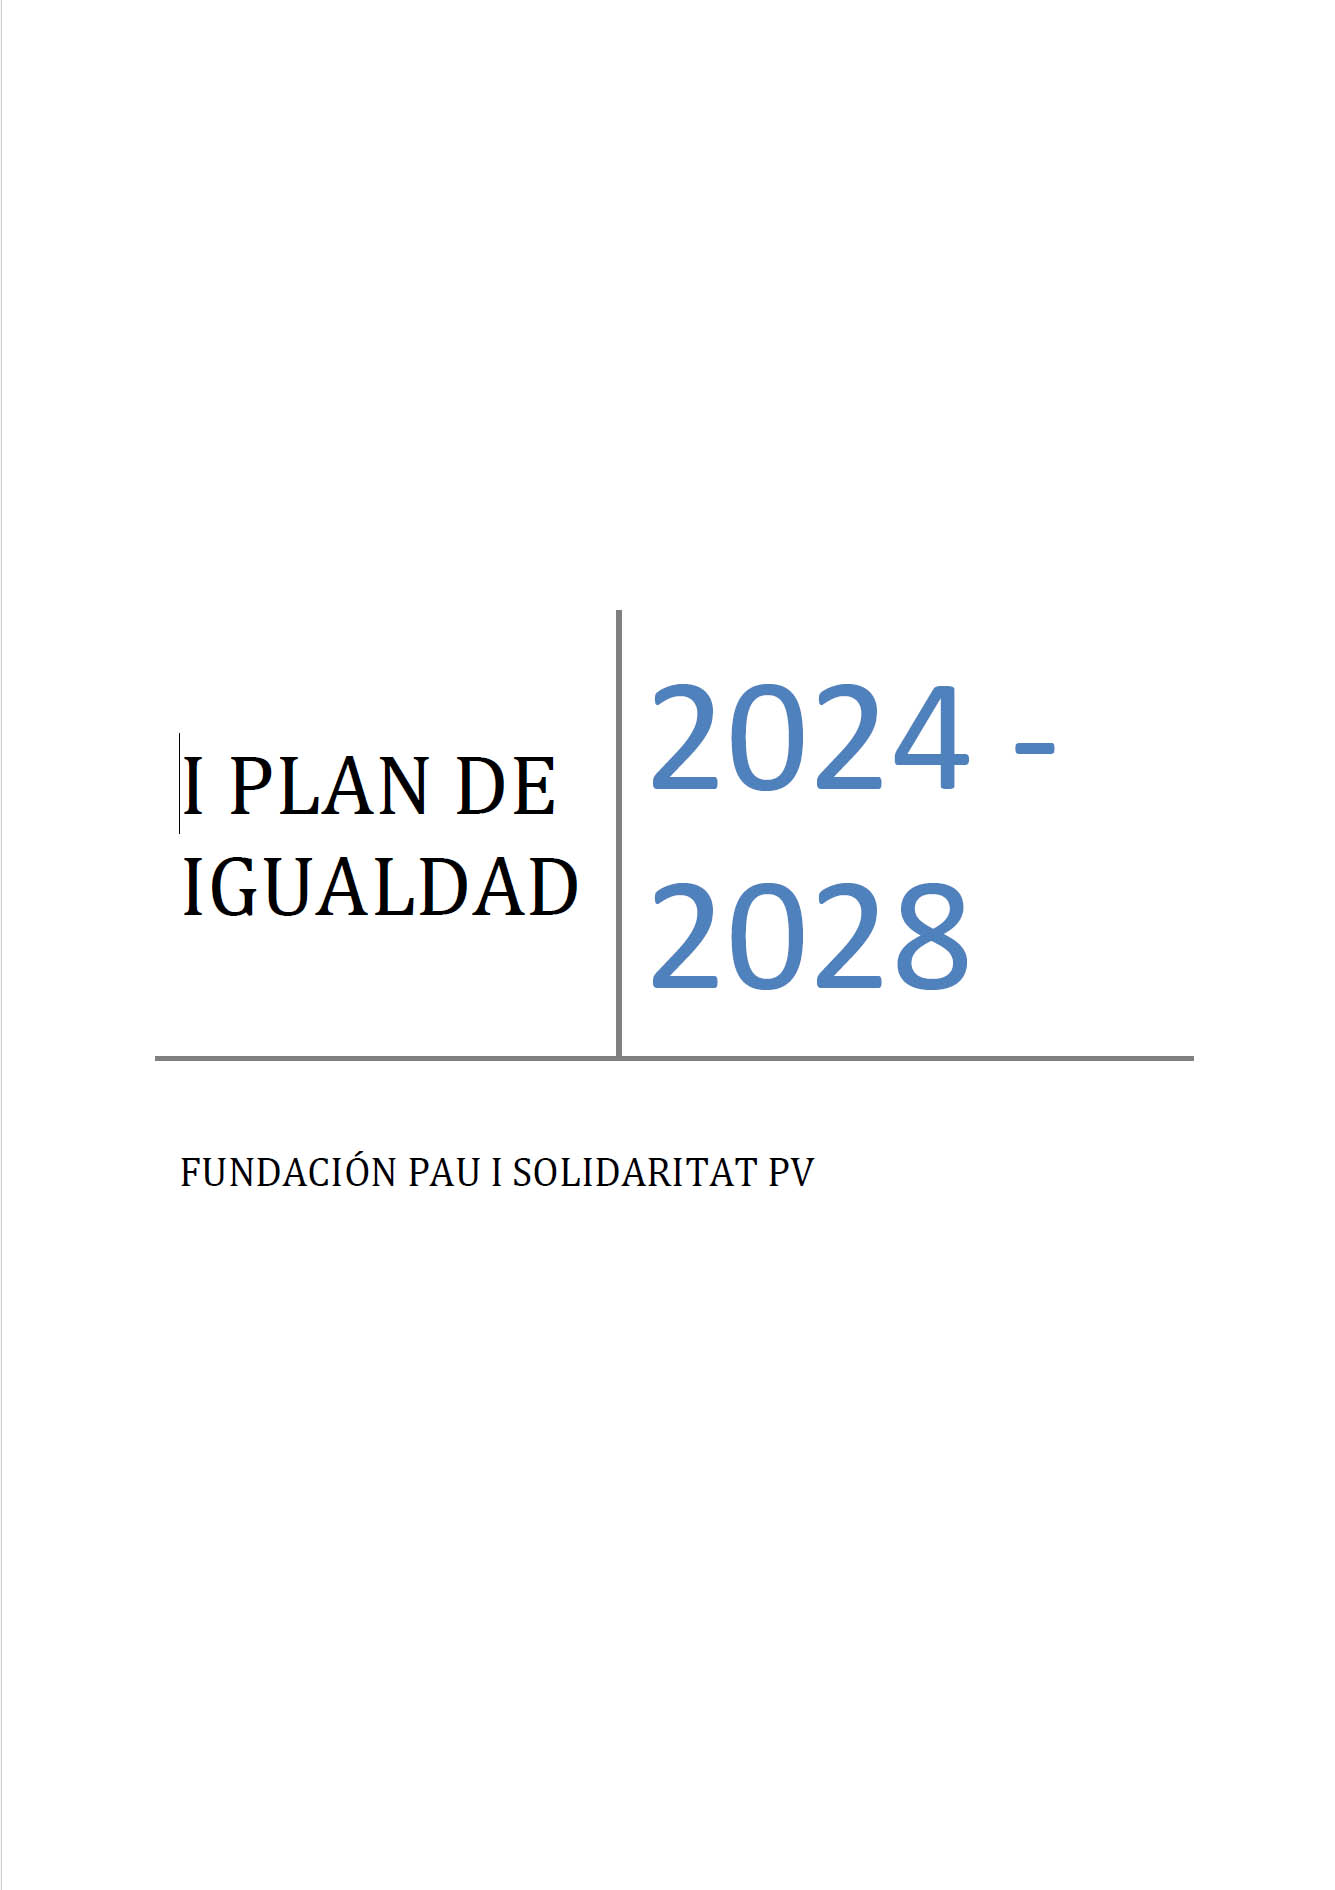 II PLAN DE IGUALDAD (CS CCOO PV) 2021-2024